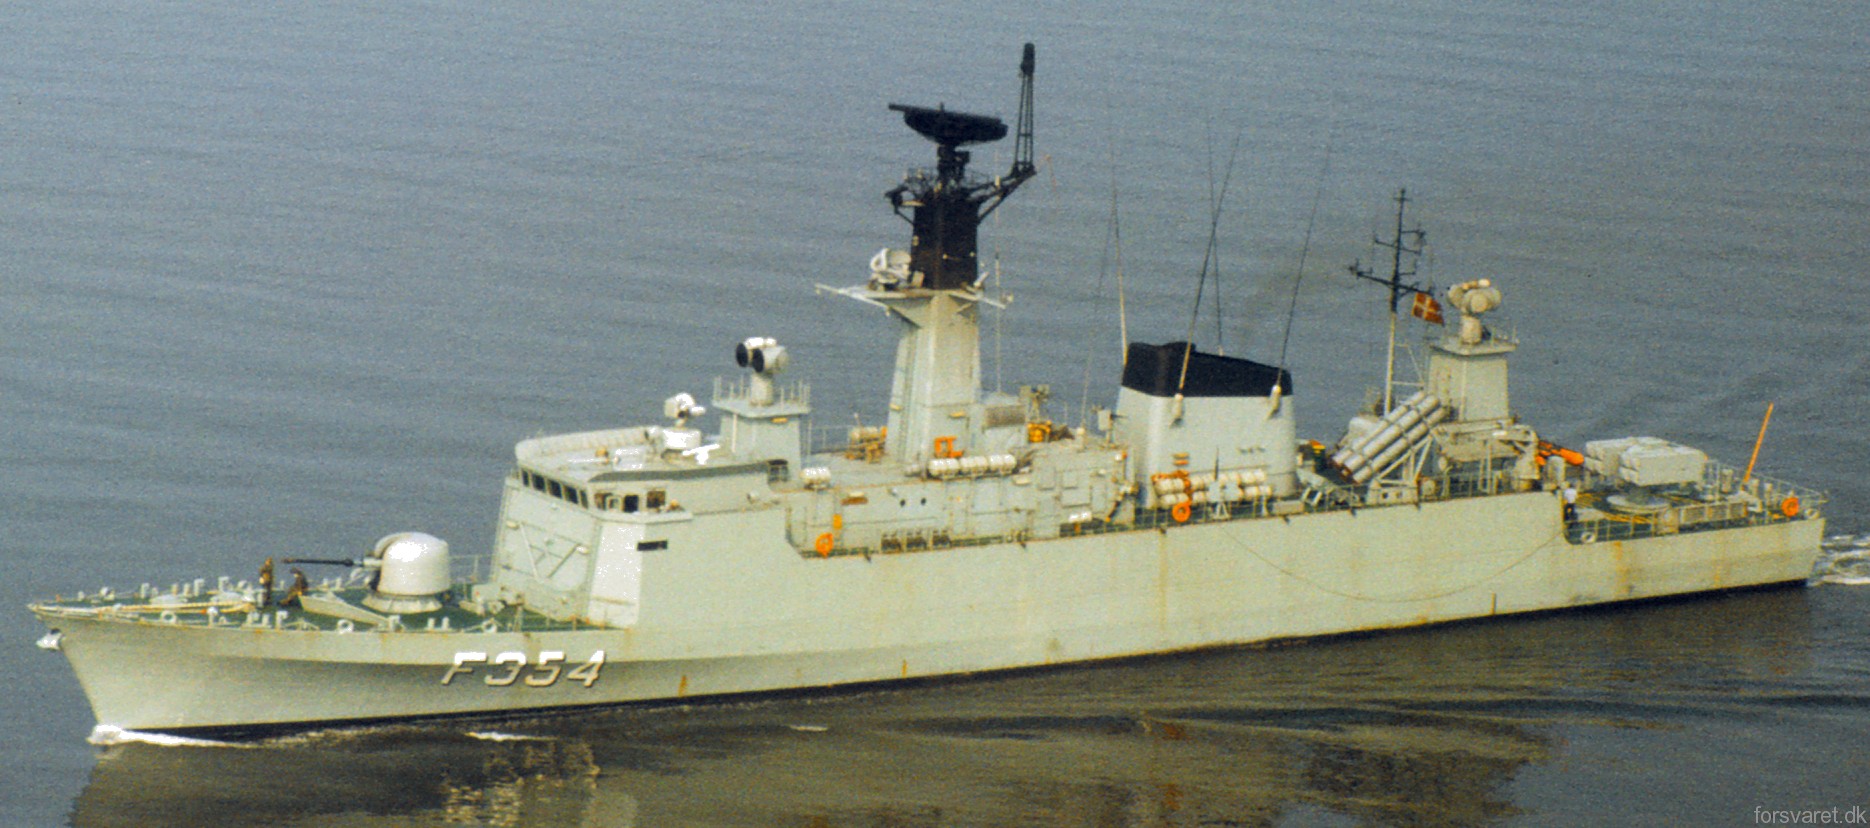 f-354 hdms niels juel class corvette royal danish navy kongelige danske marine kdm 17